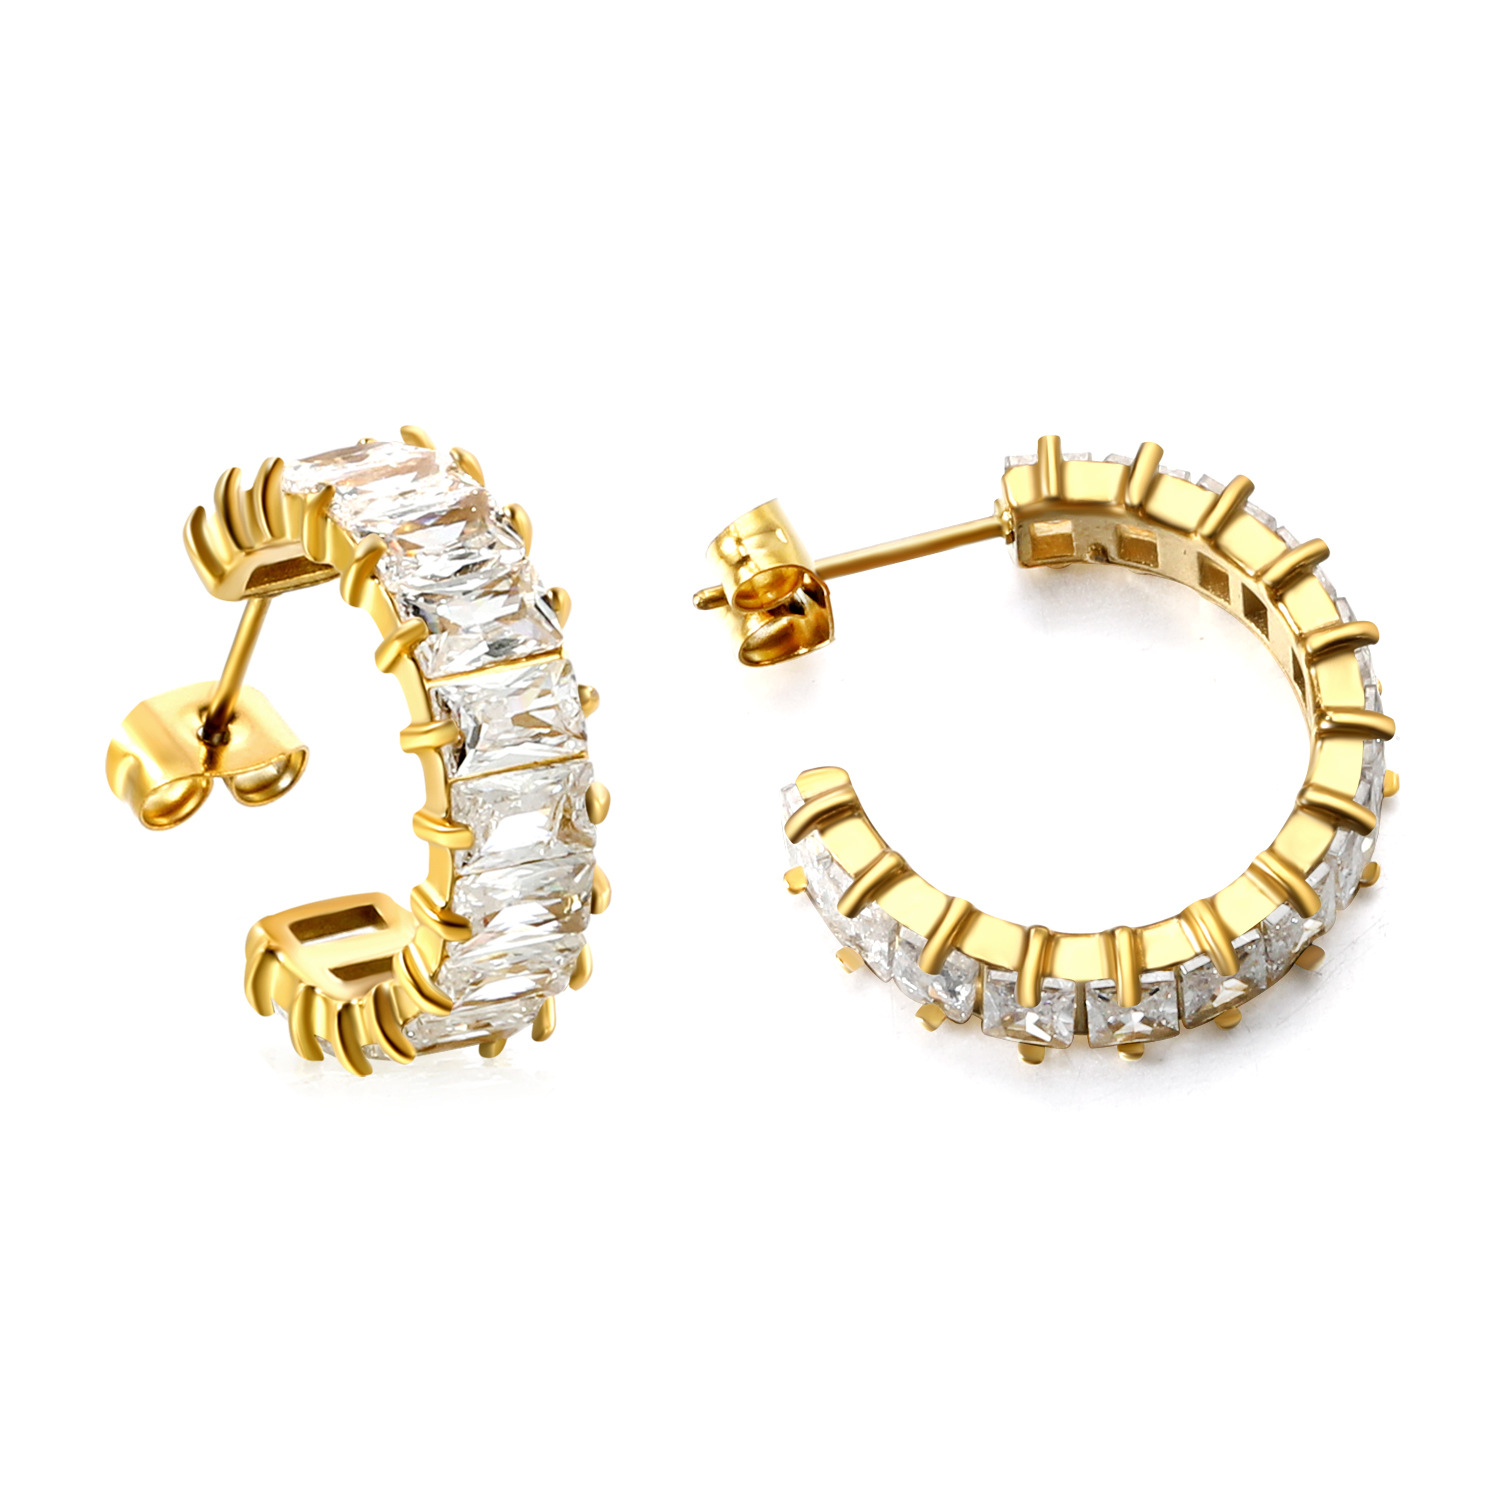 White diamond earrings, gold